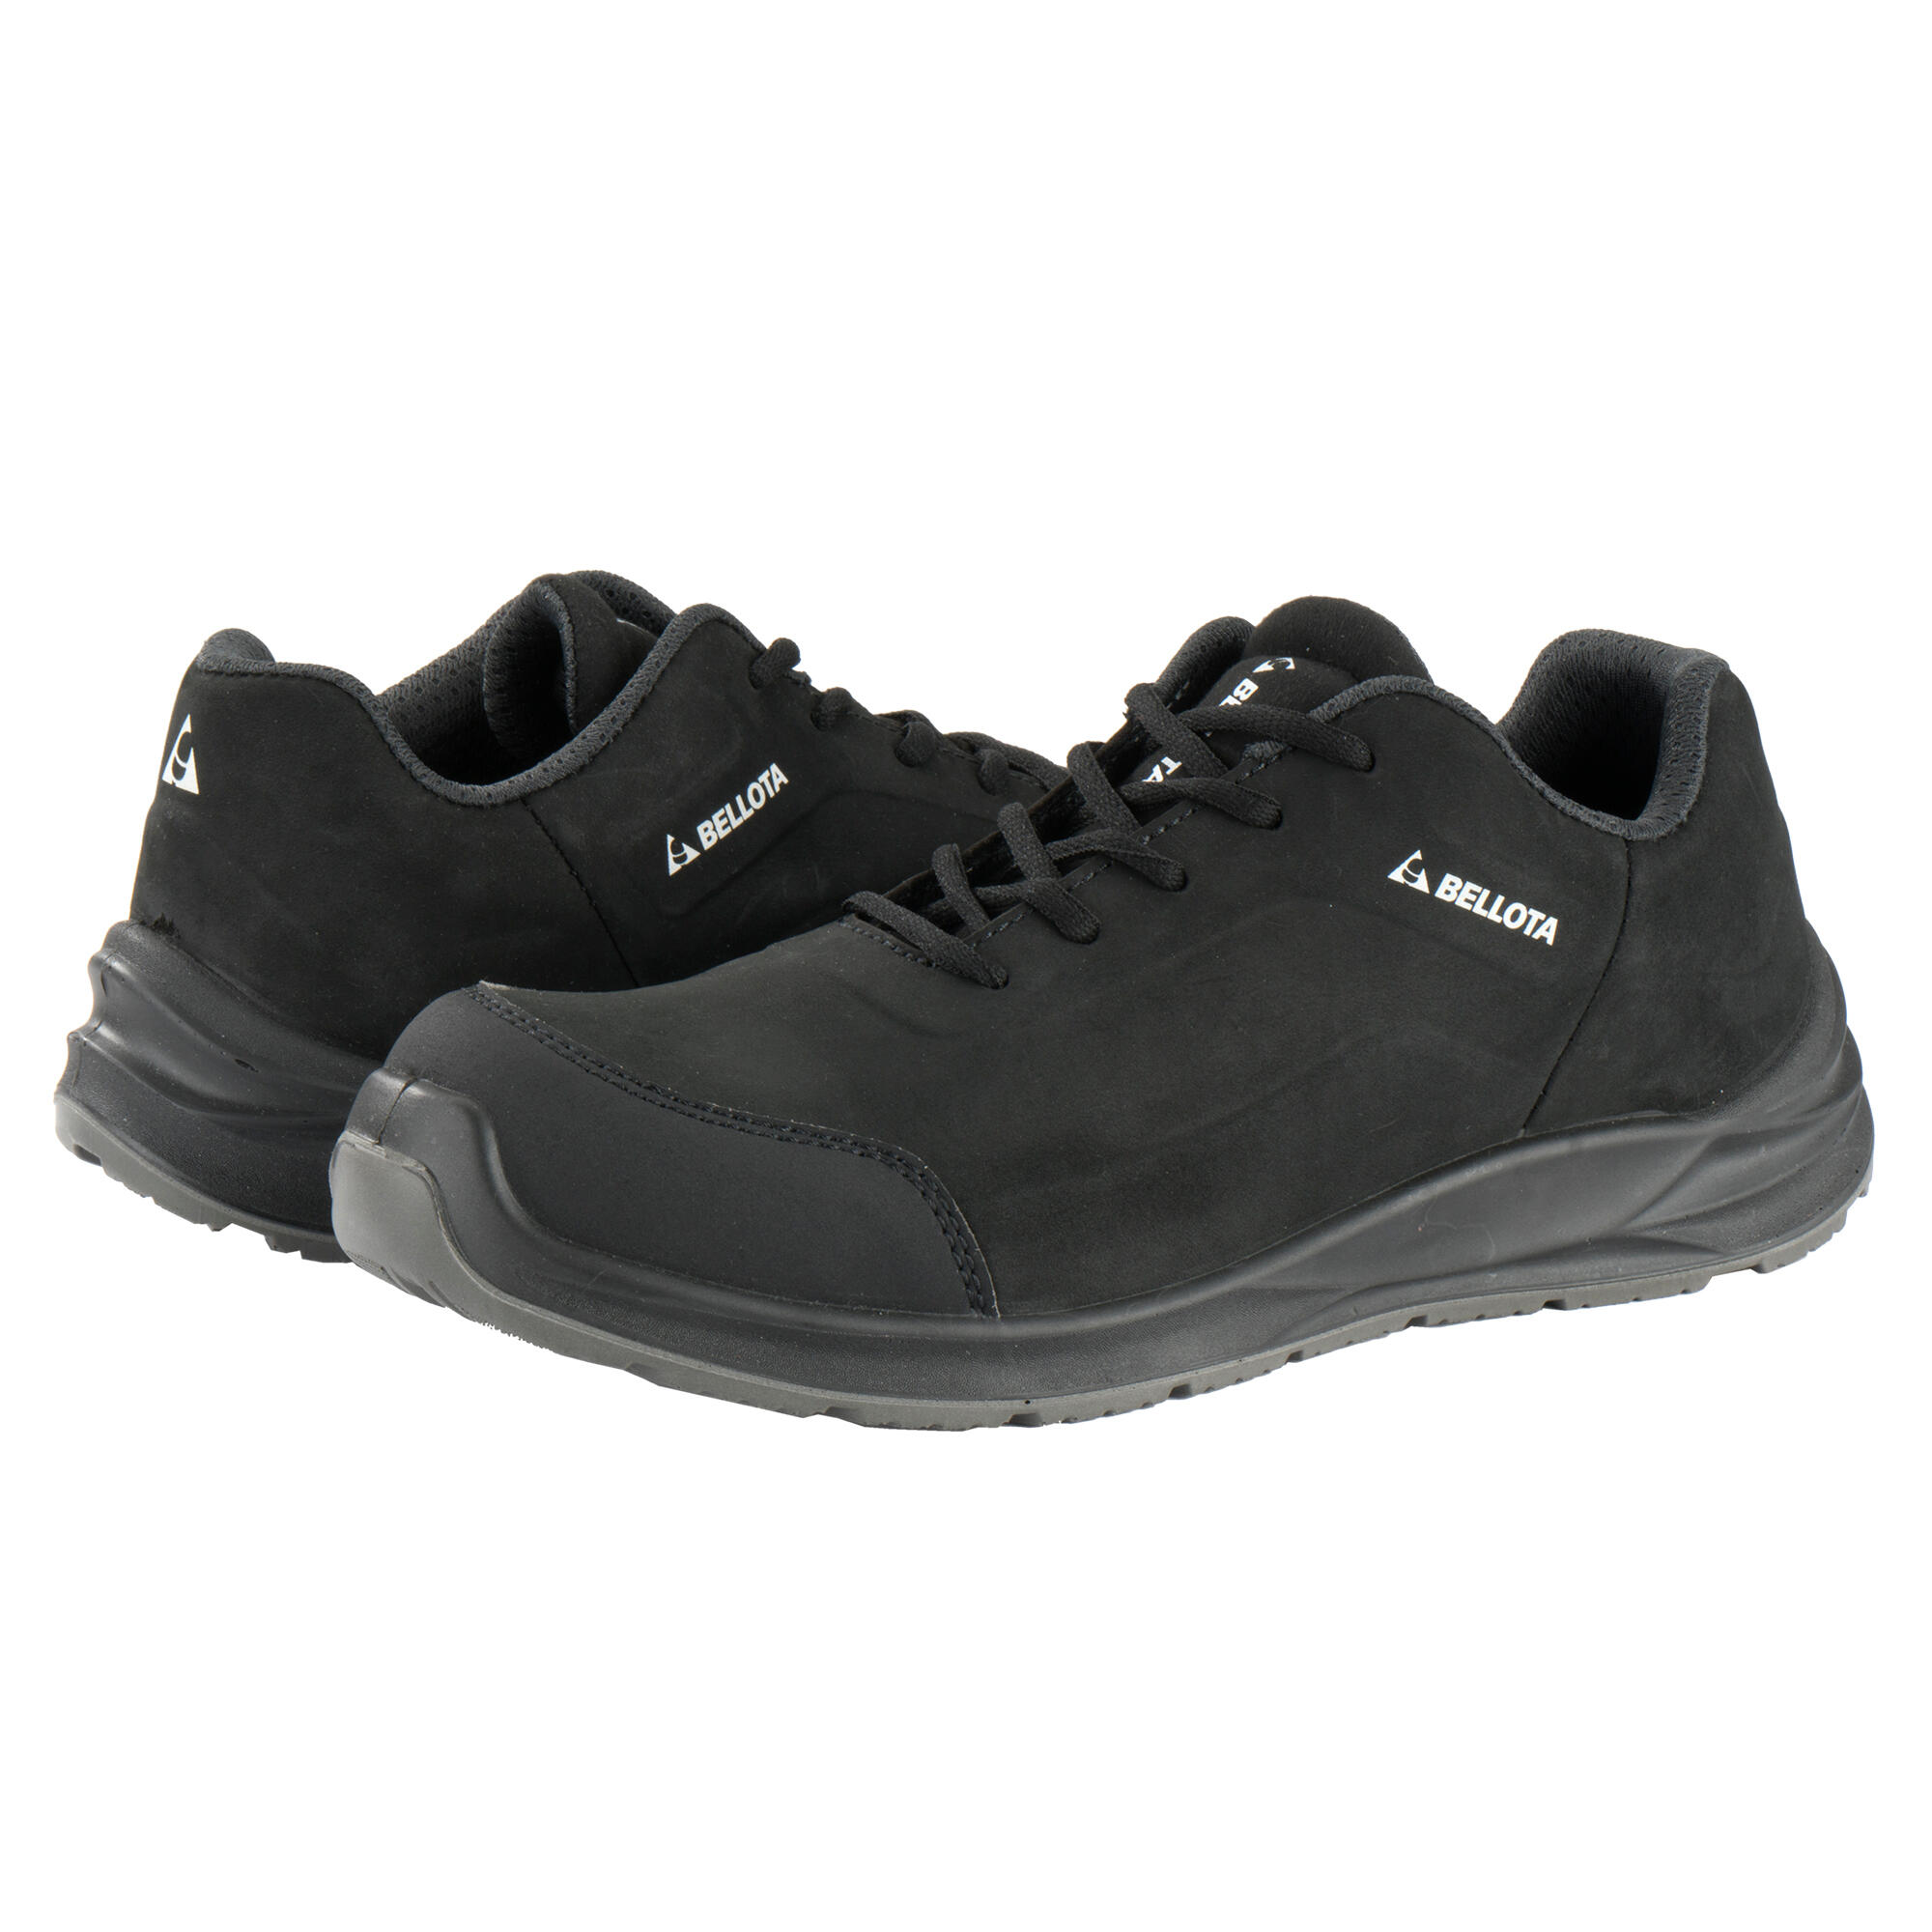 Zapatos seguridad s3 bellota flex carbón negro t39